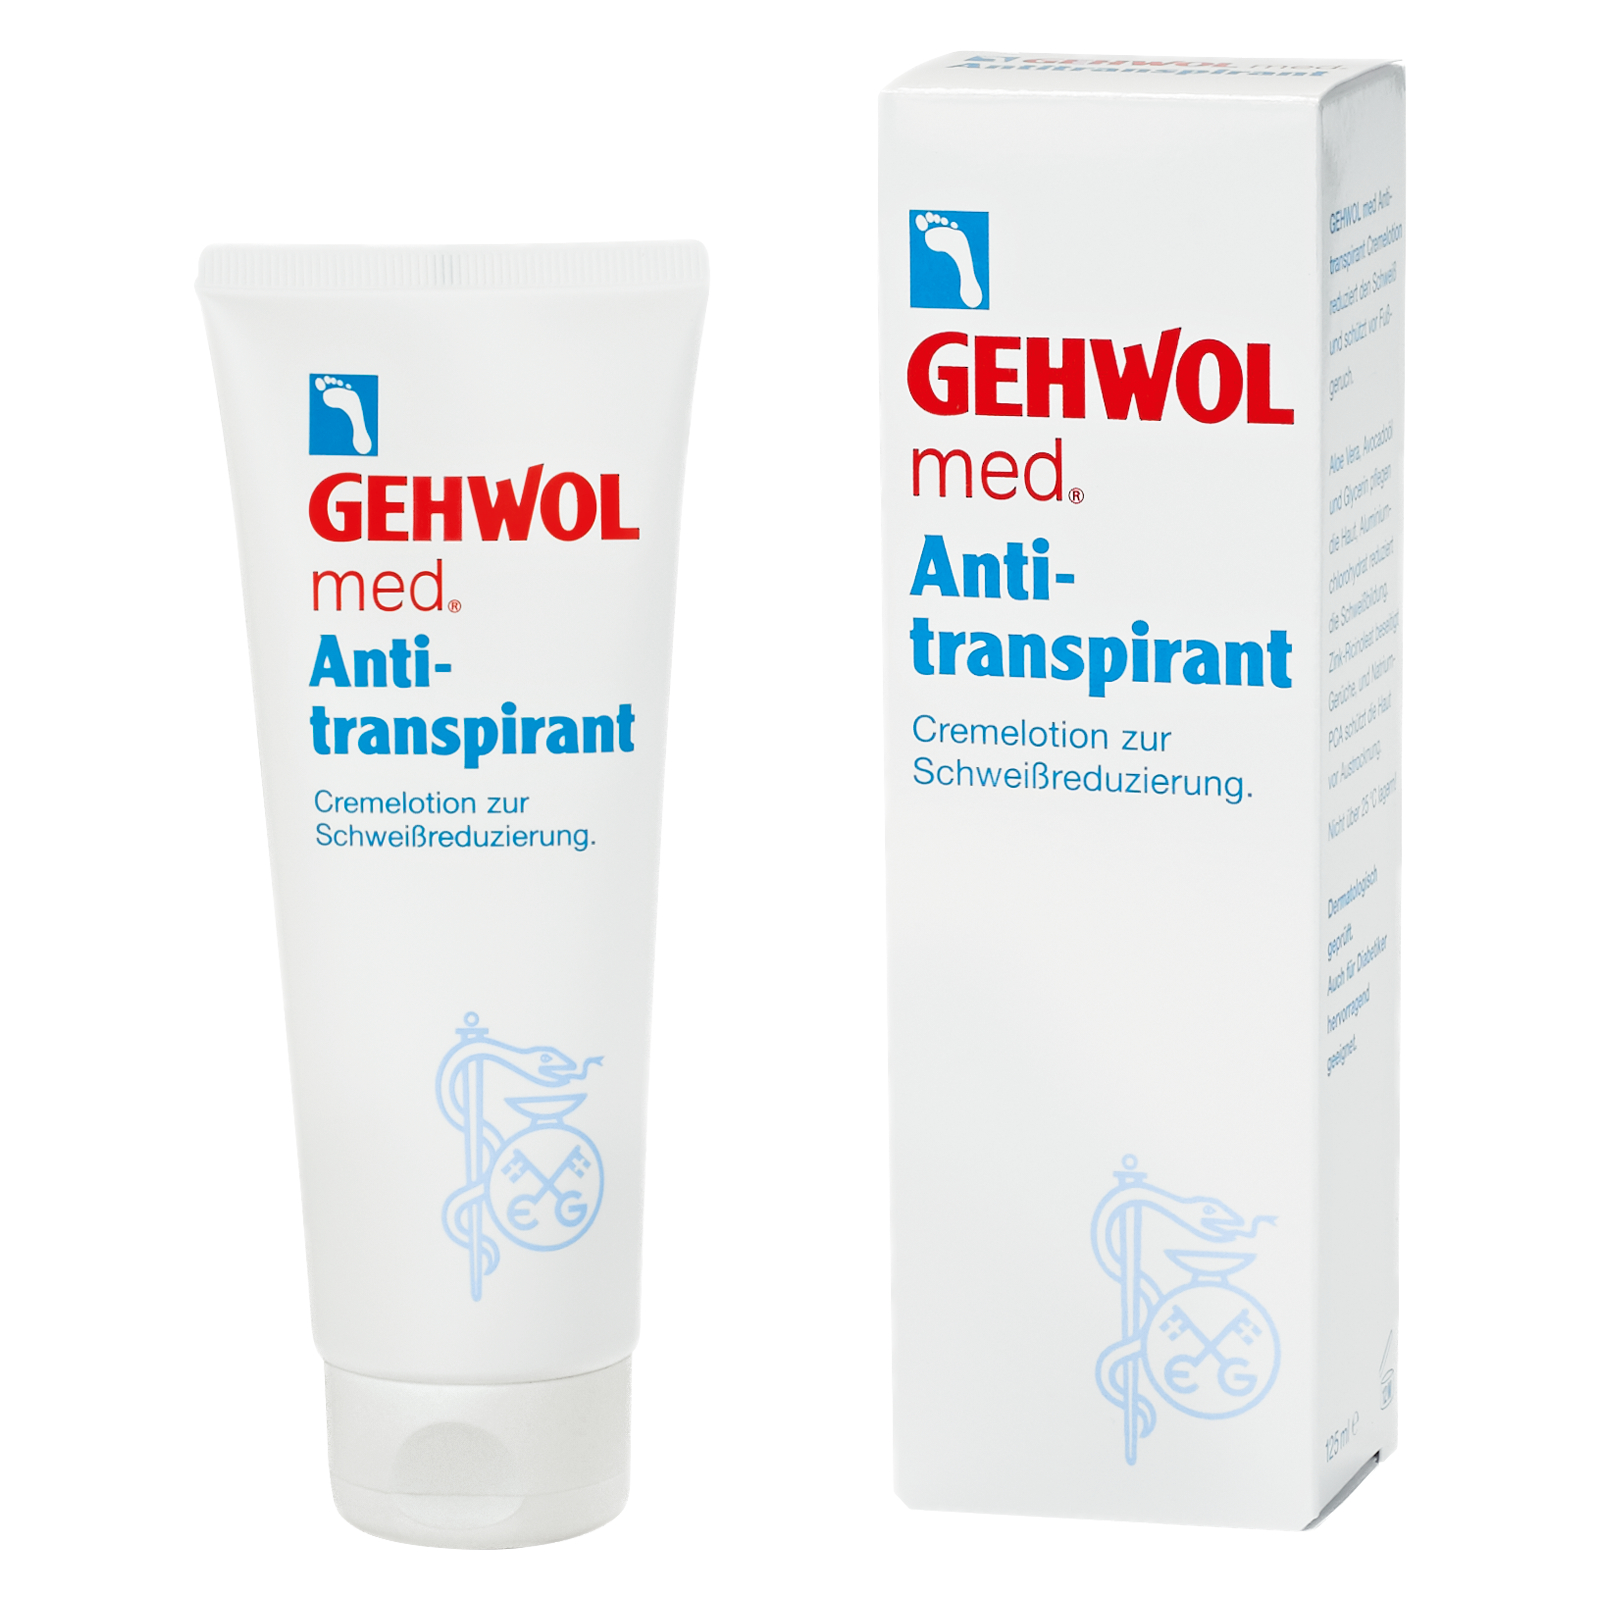 GEHWOL med Antitranspirant - 125 ml